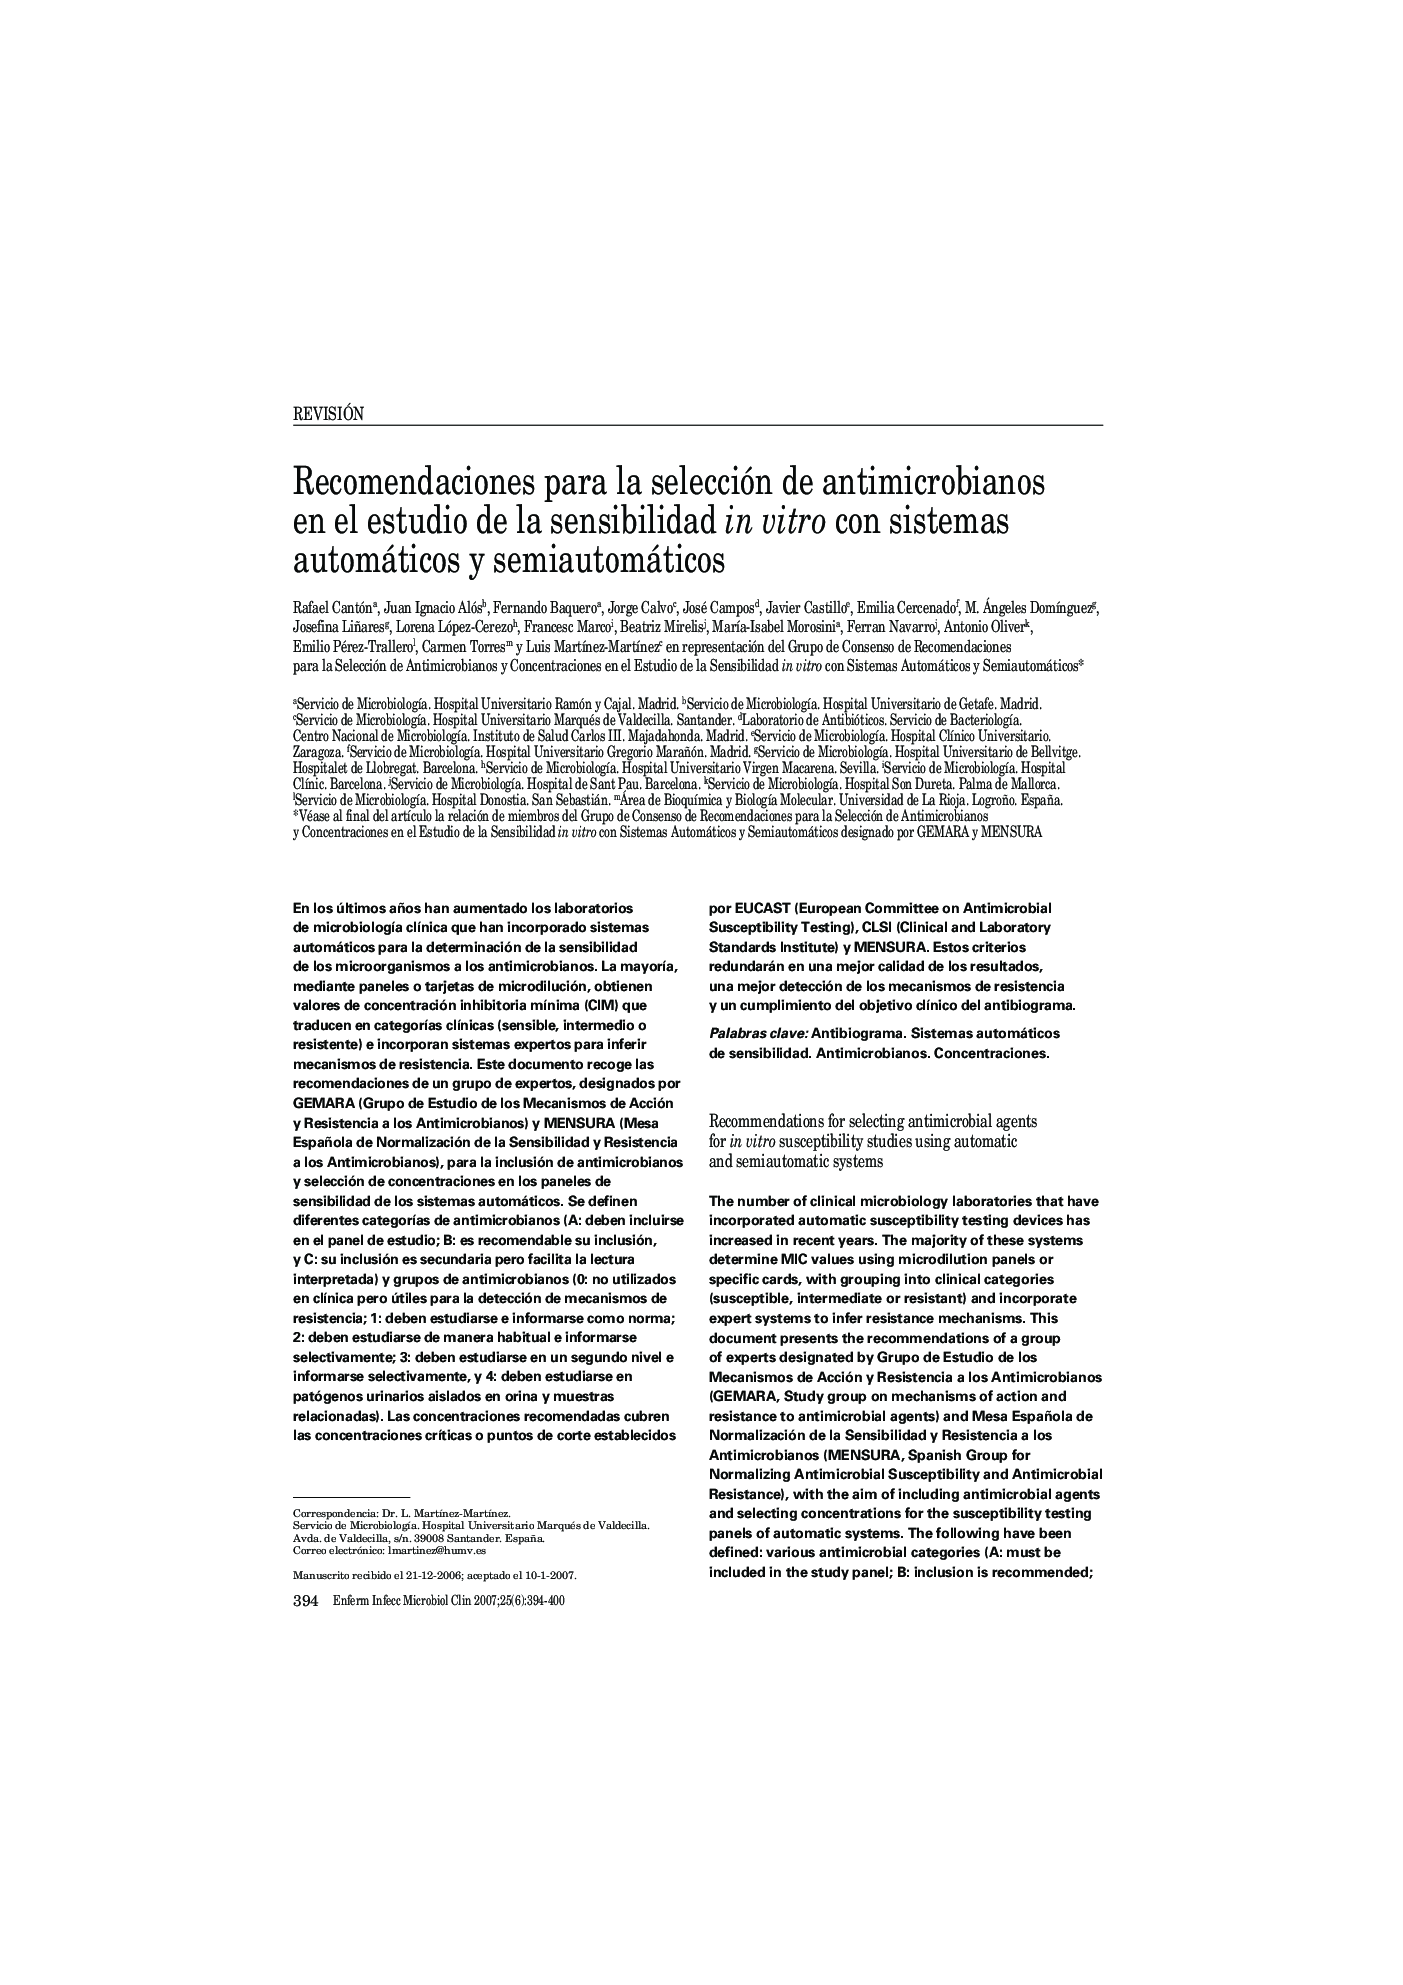 Recomendaciones para la selección de antimicrobianos en el estudio de la sensibilidad in vitro con sistemas automáticos y semiautomáticos